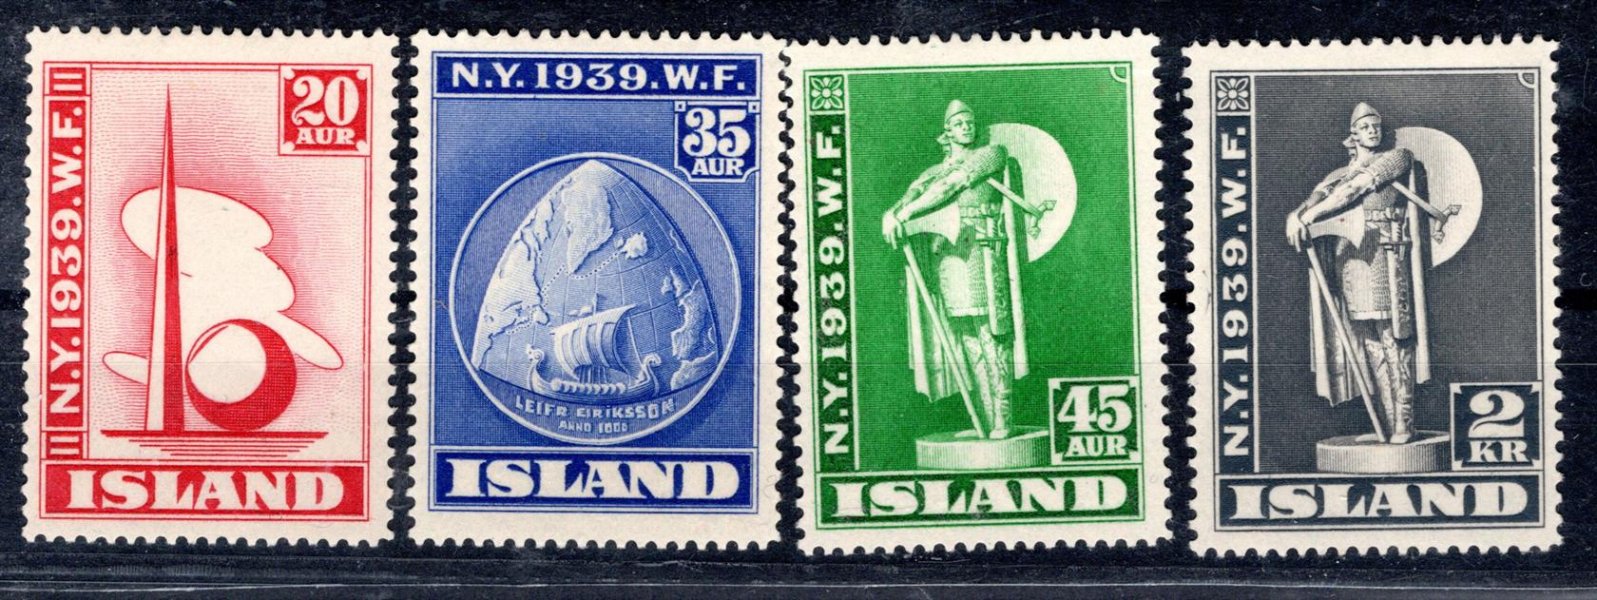 Island - Mi. 204 - 7, světová výstava New York